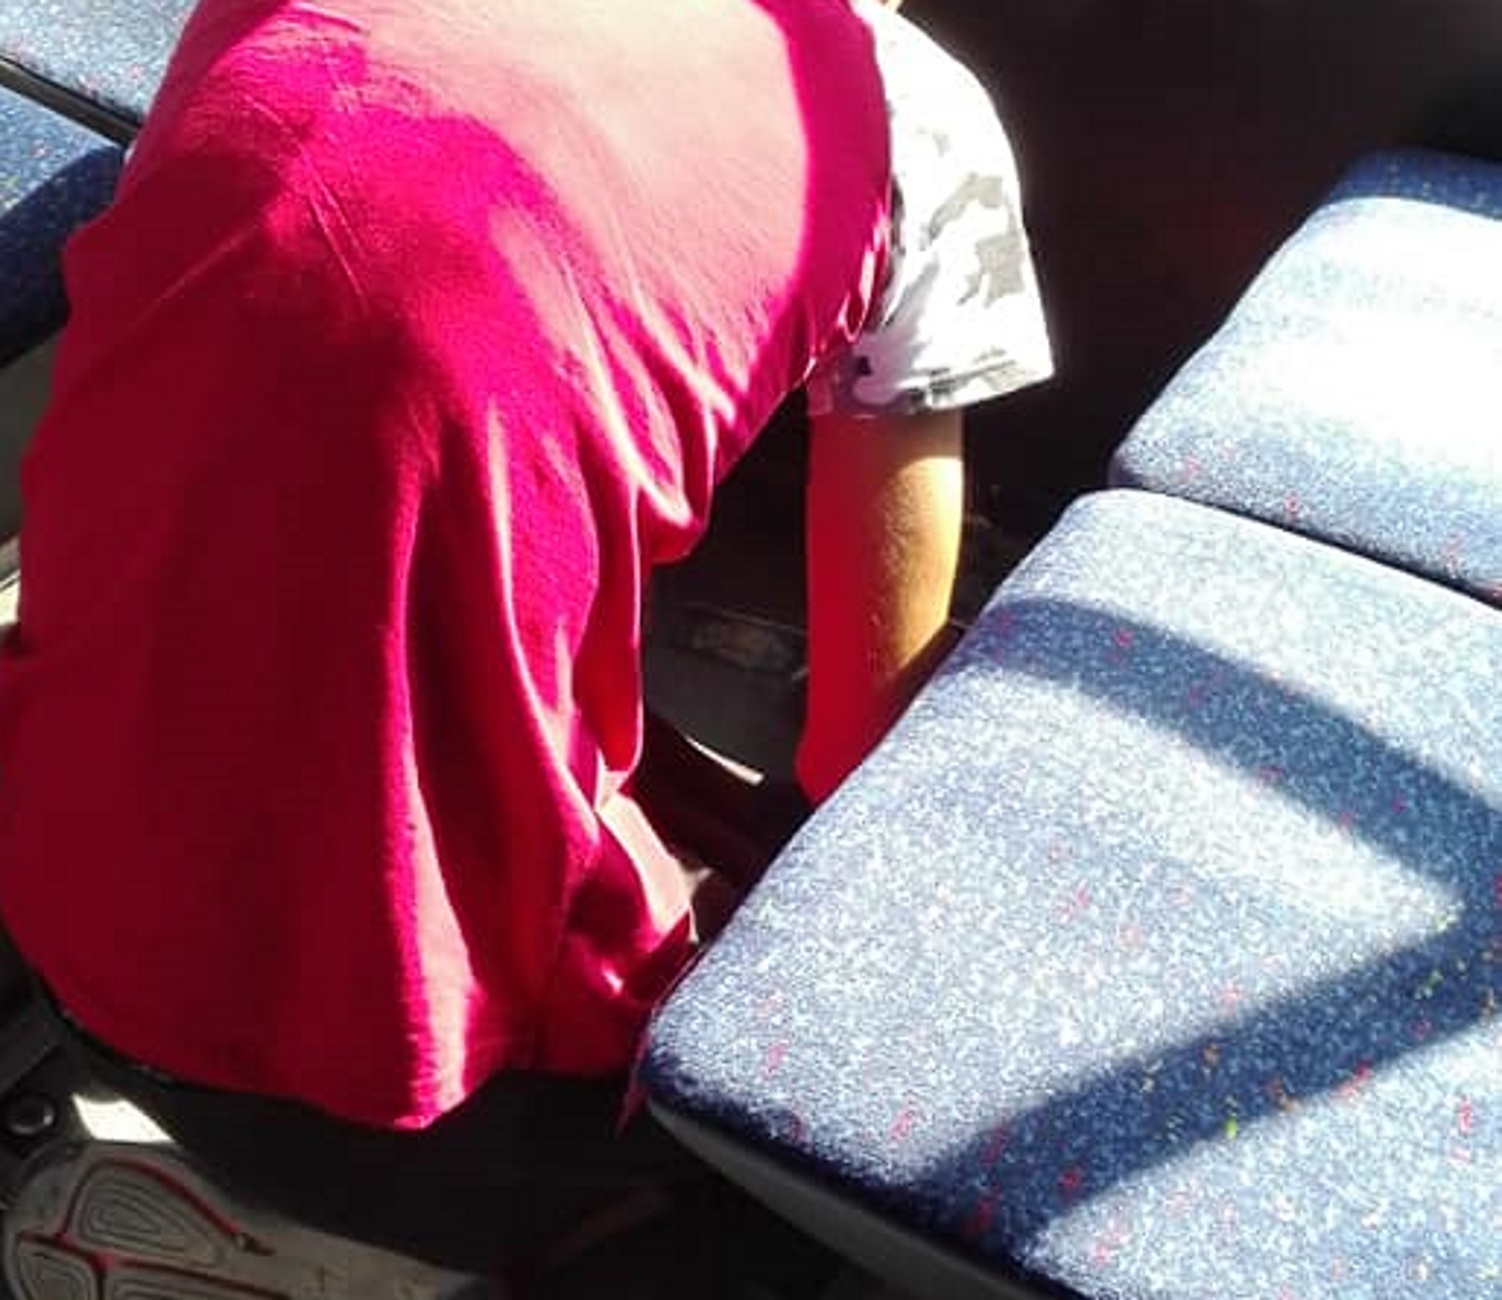 Θεσσαλονίκη: Εικόνες που σοκάρουν σε λεωφορείο του ΟΑΣΘ – Η αρχική έκπληξη που έγινε θλίψη [pics]